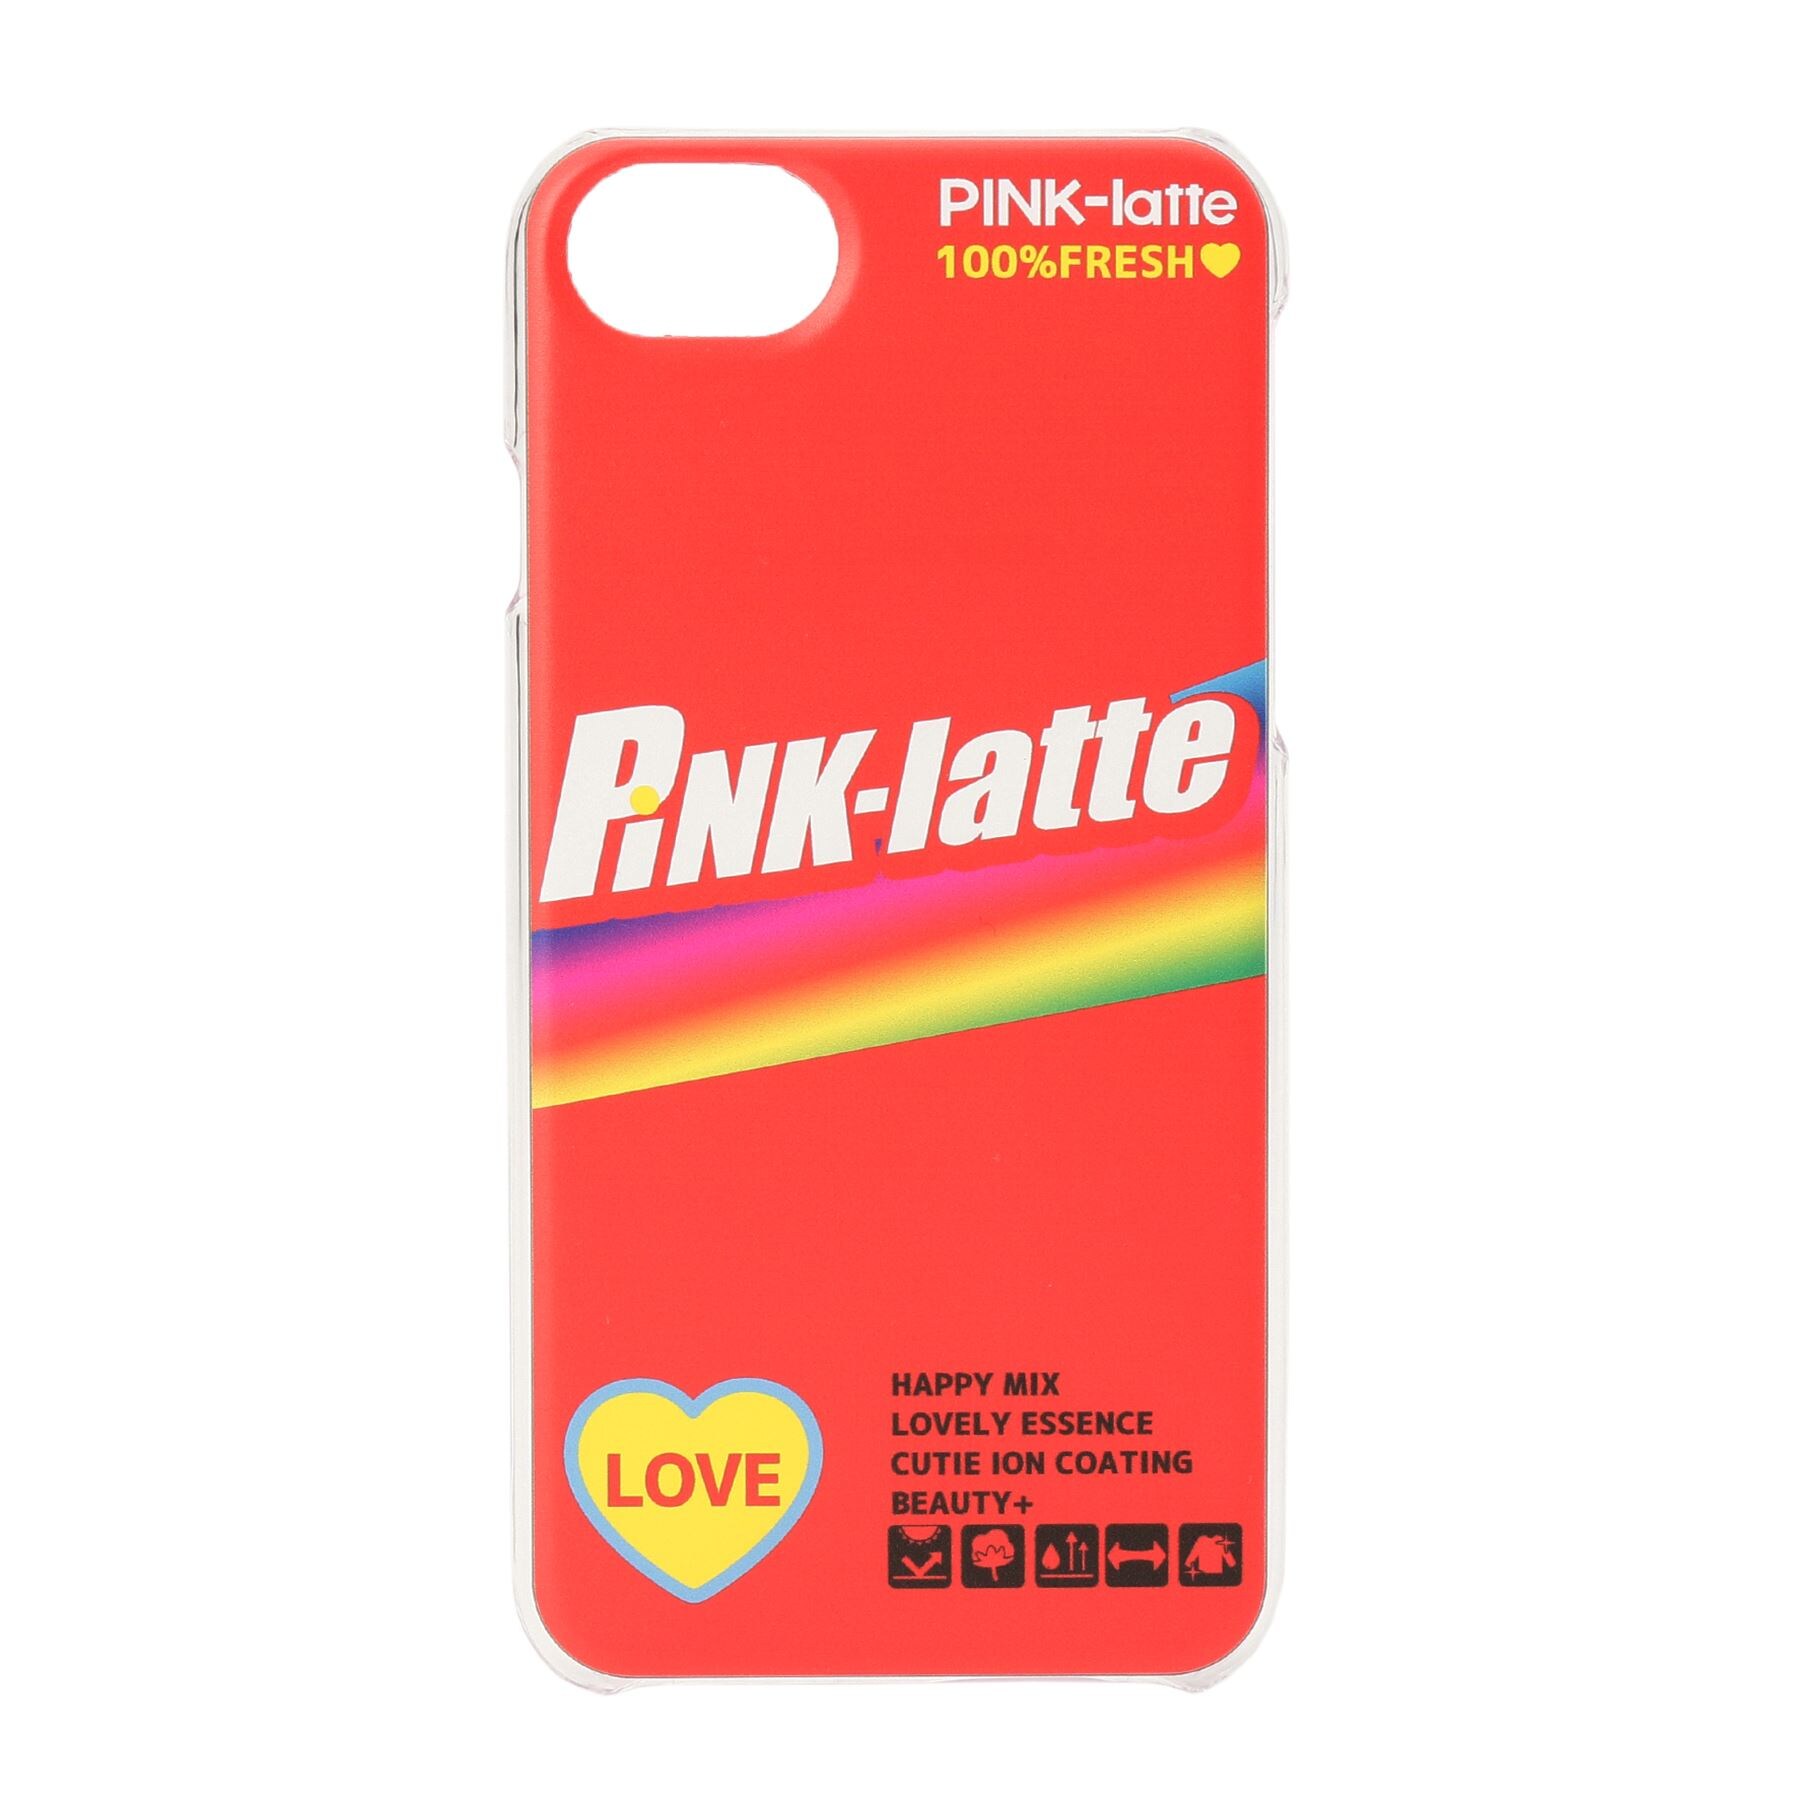 ピンク ラテ(PINK-latte)のiPhone8/7/6s/6 ロゴクリアスマホケース レッド(062)